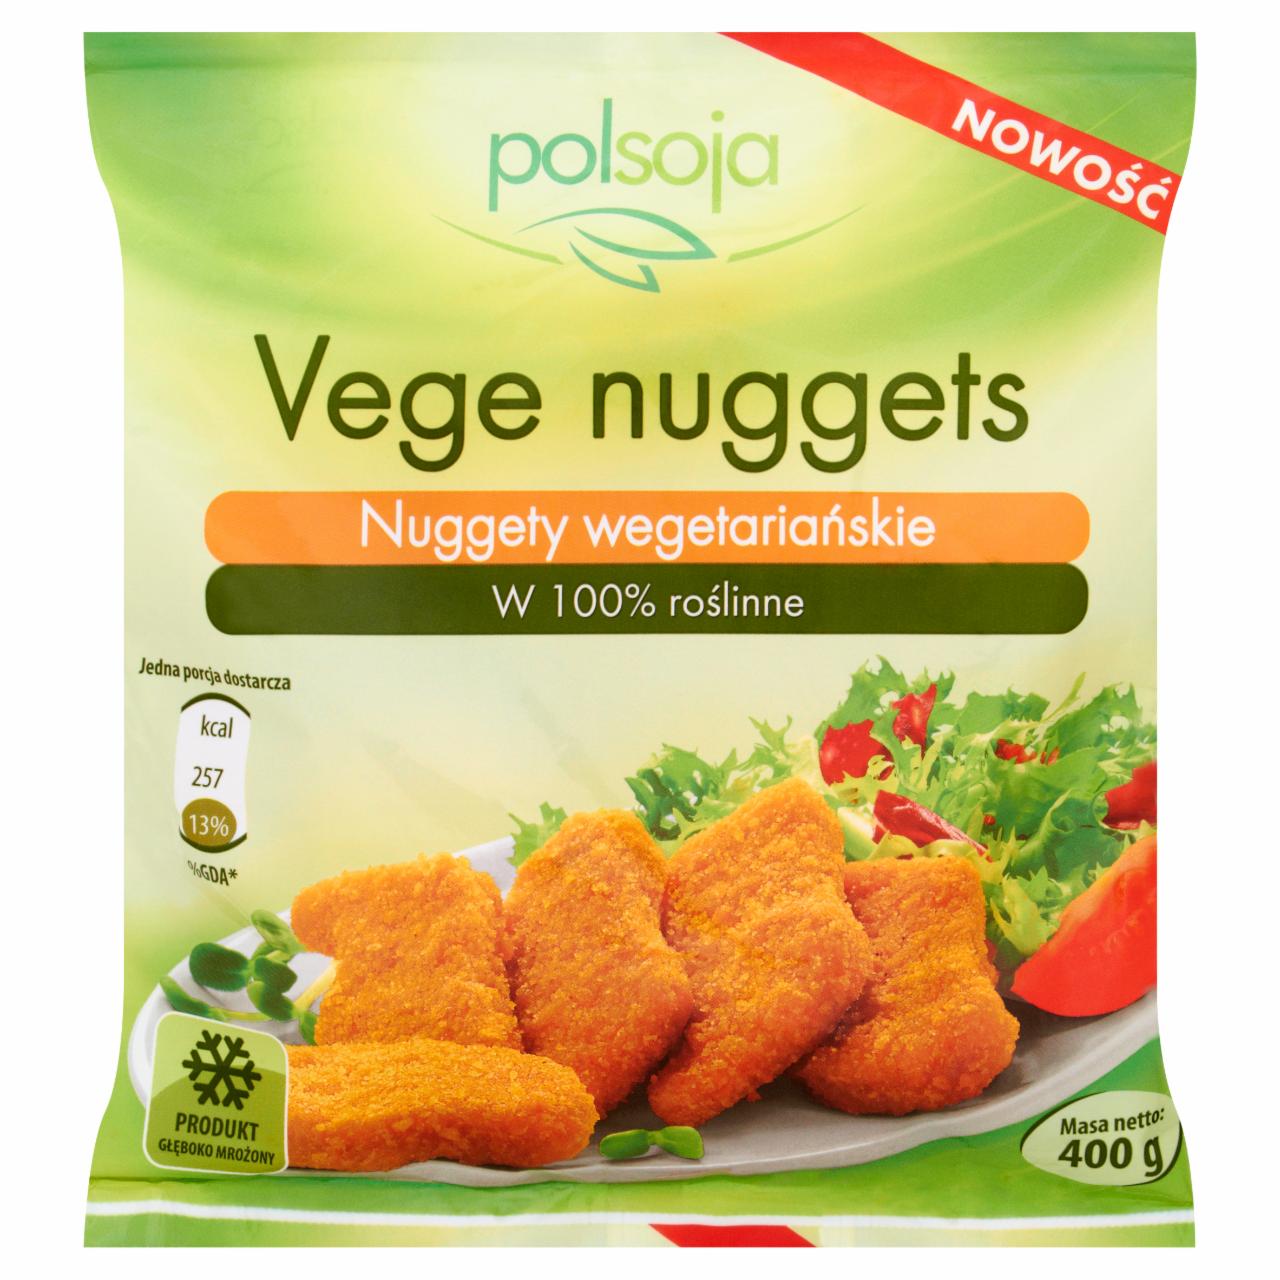 Zdjęcia - Polsoja Nuggety wegetariańskie 400 g